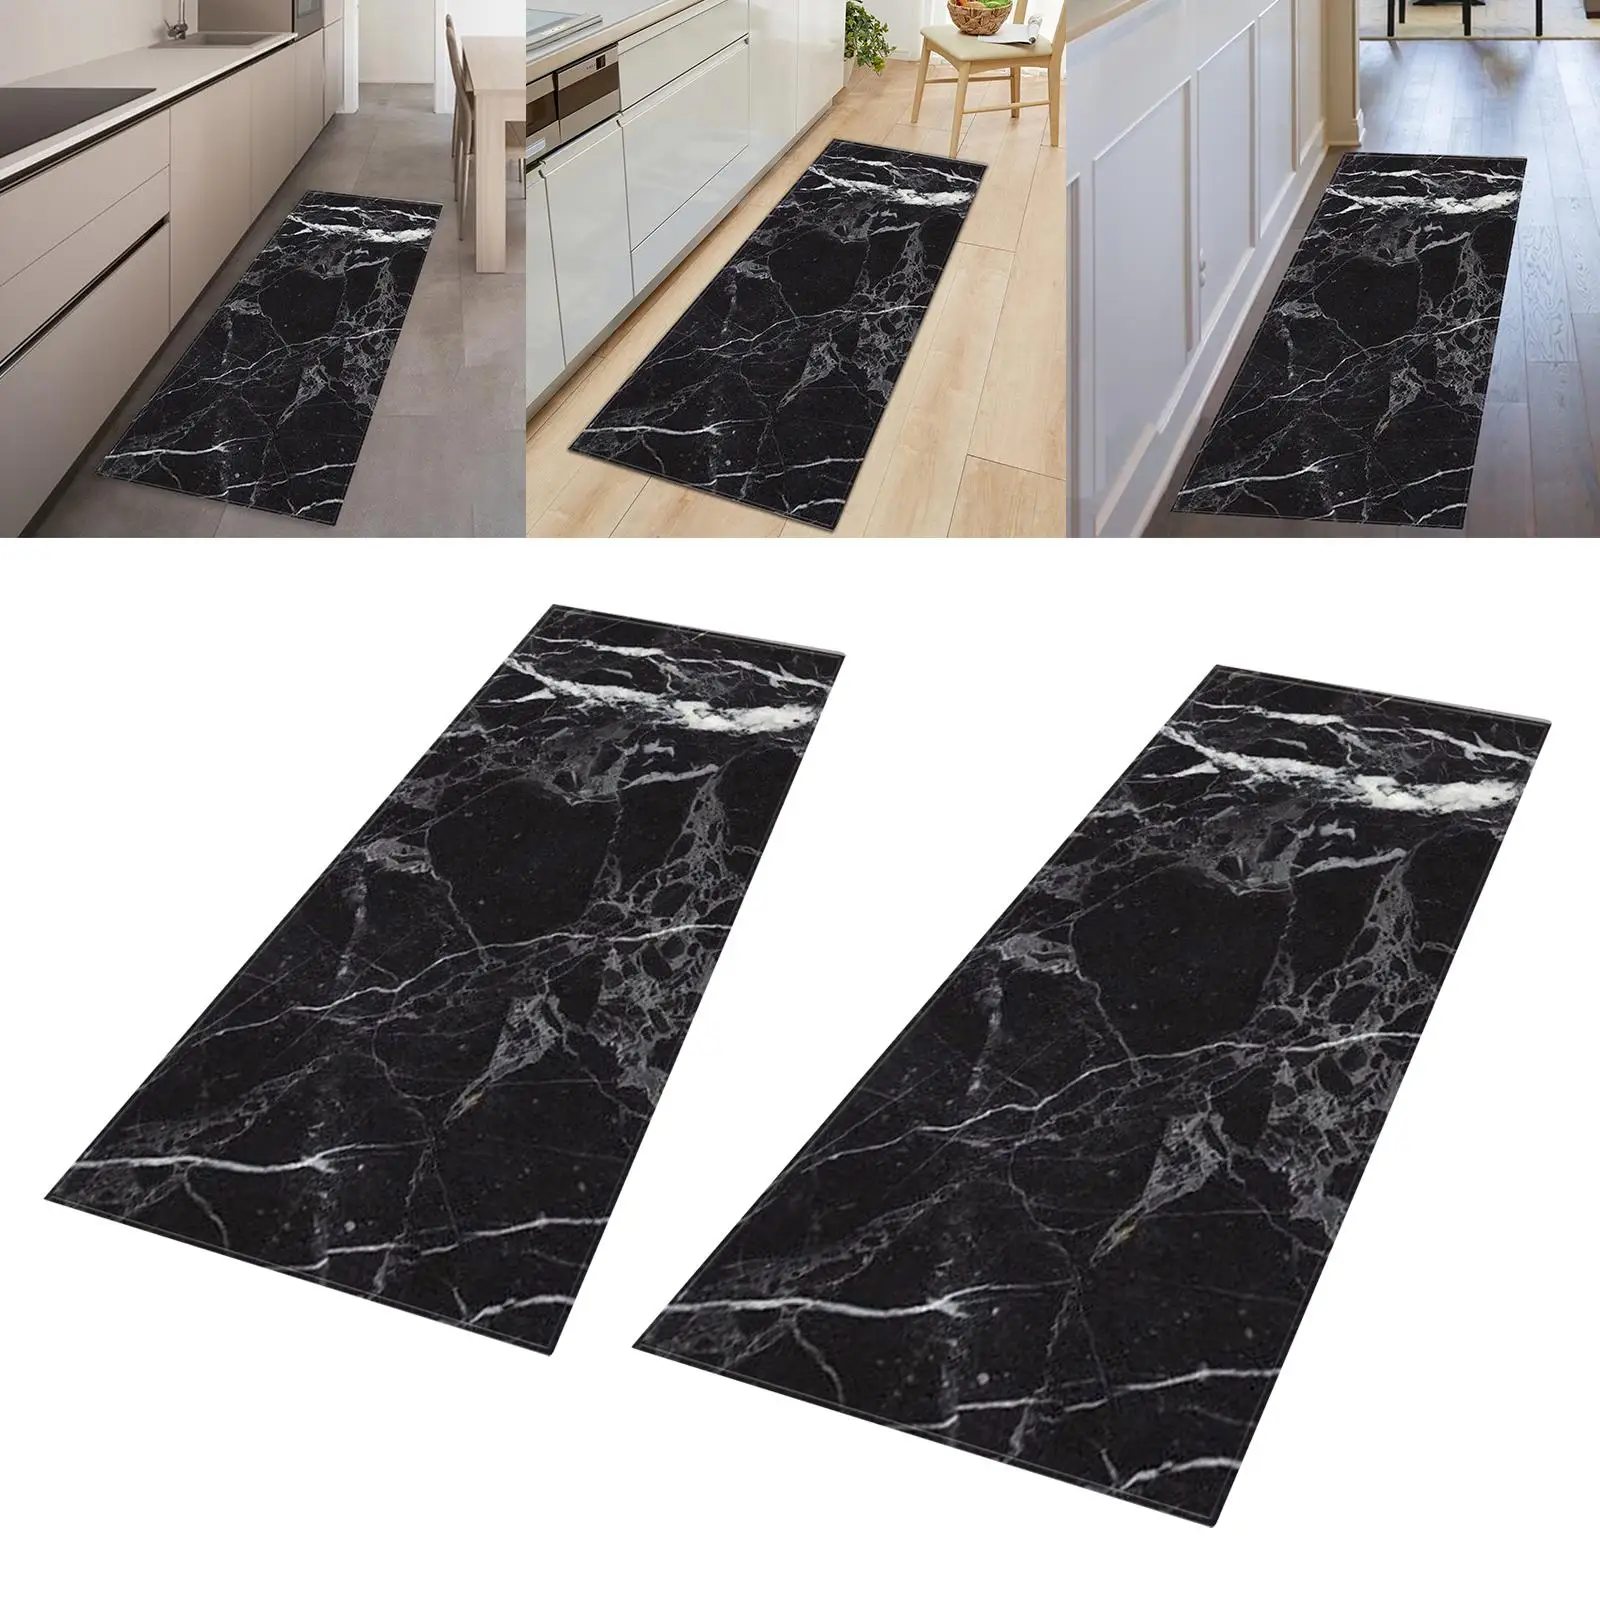 Non Slip Area Runner Rugs Decorative Area Carpet Door Mat Entrance Doormat for Hallway Kitchen Entryway Bathroom Corridor